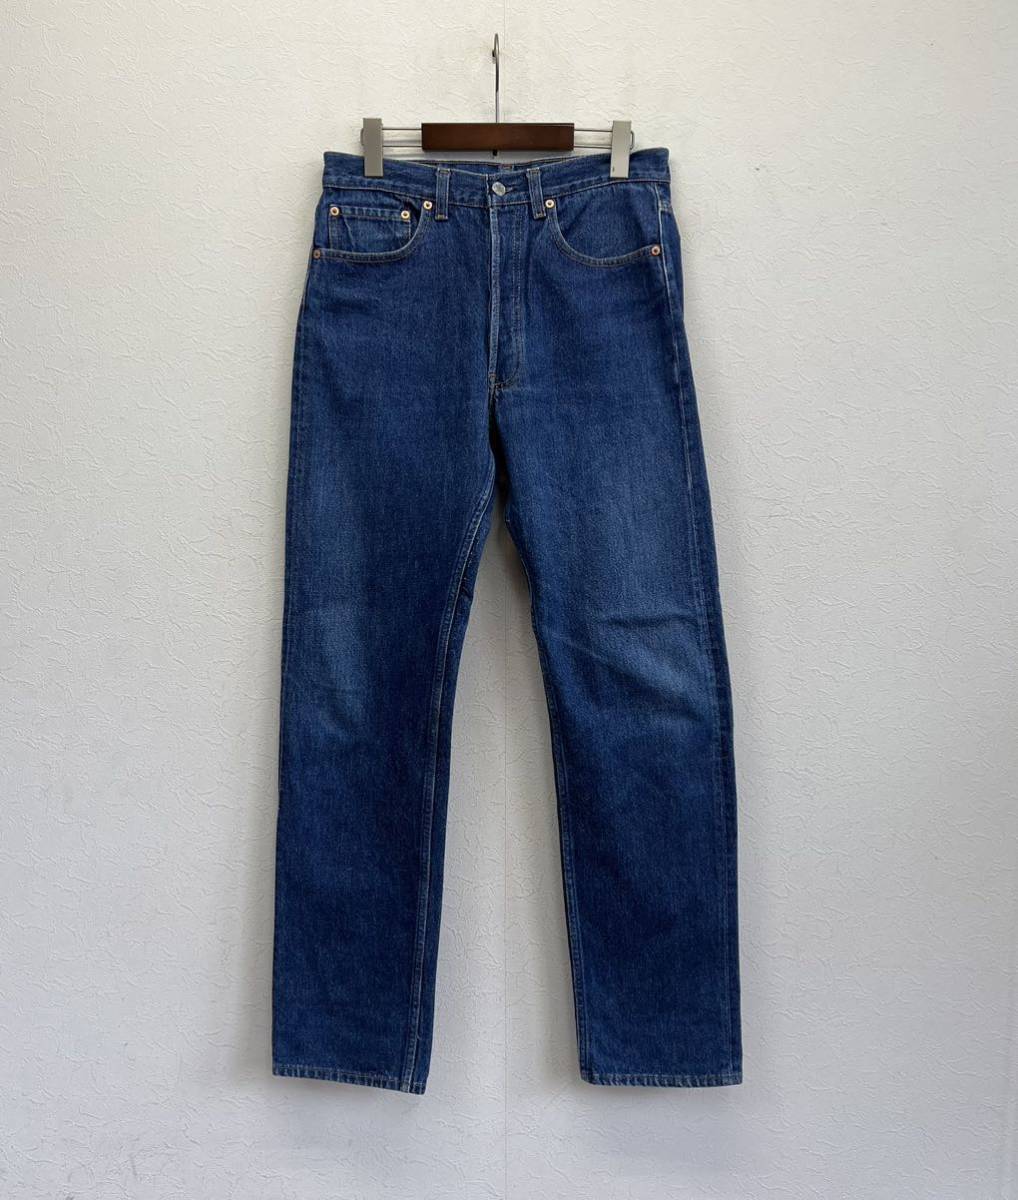 90'S USA製 Levi's 501 denim pants size 33×36 リーバイス 90年代 デニムパンツ ジーンズ アメカジ ジーパン vintage ビンテージ_画像2